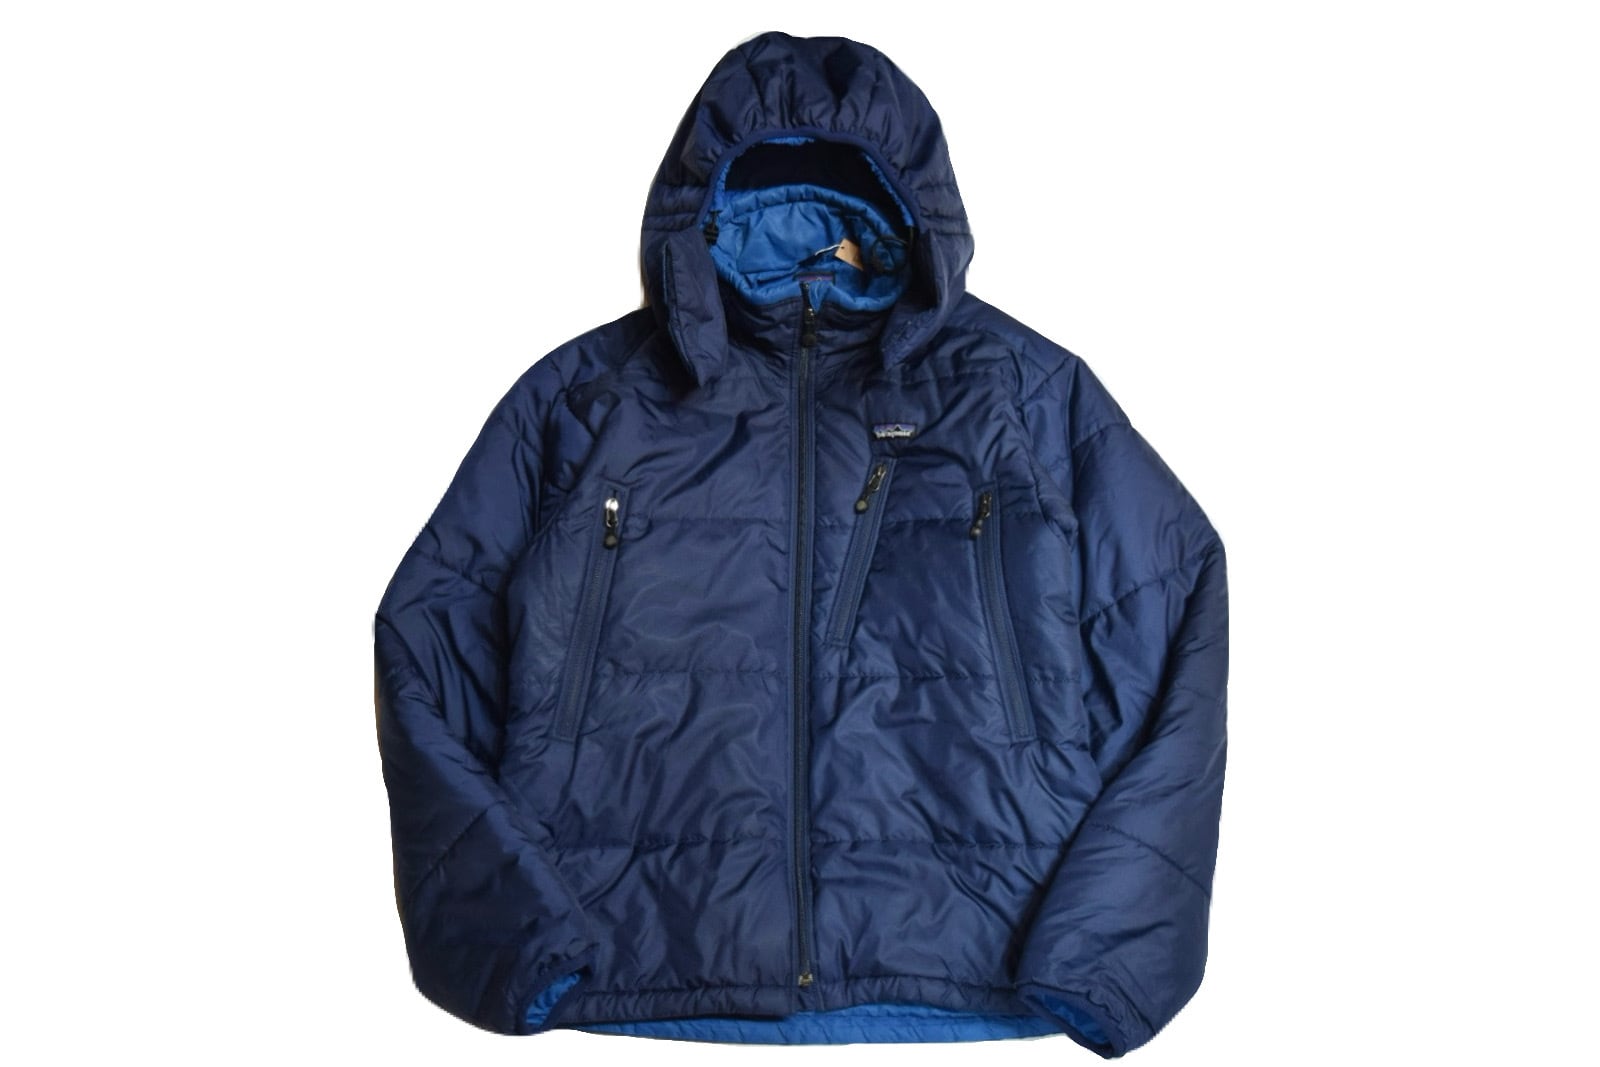 USED 00s patagonia ”Puff jacket” -Medium 02387